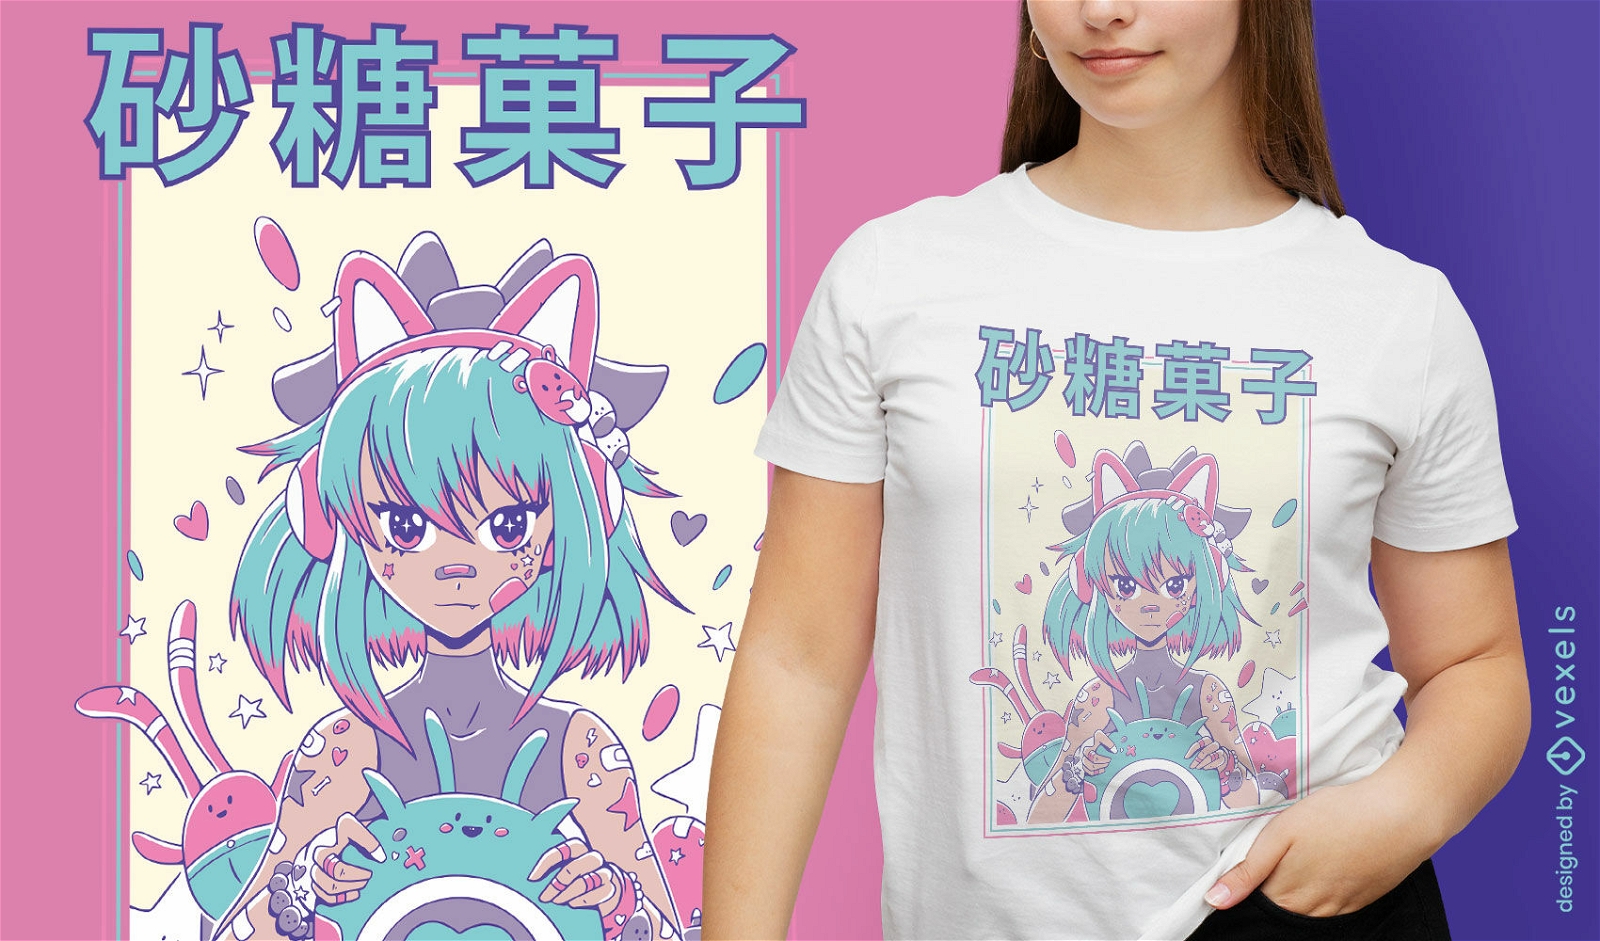 Lindo dise?o de camiseta de anime gamer girl